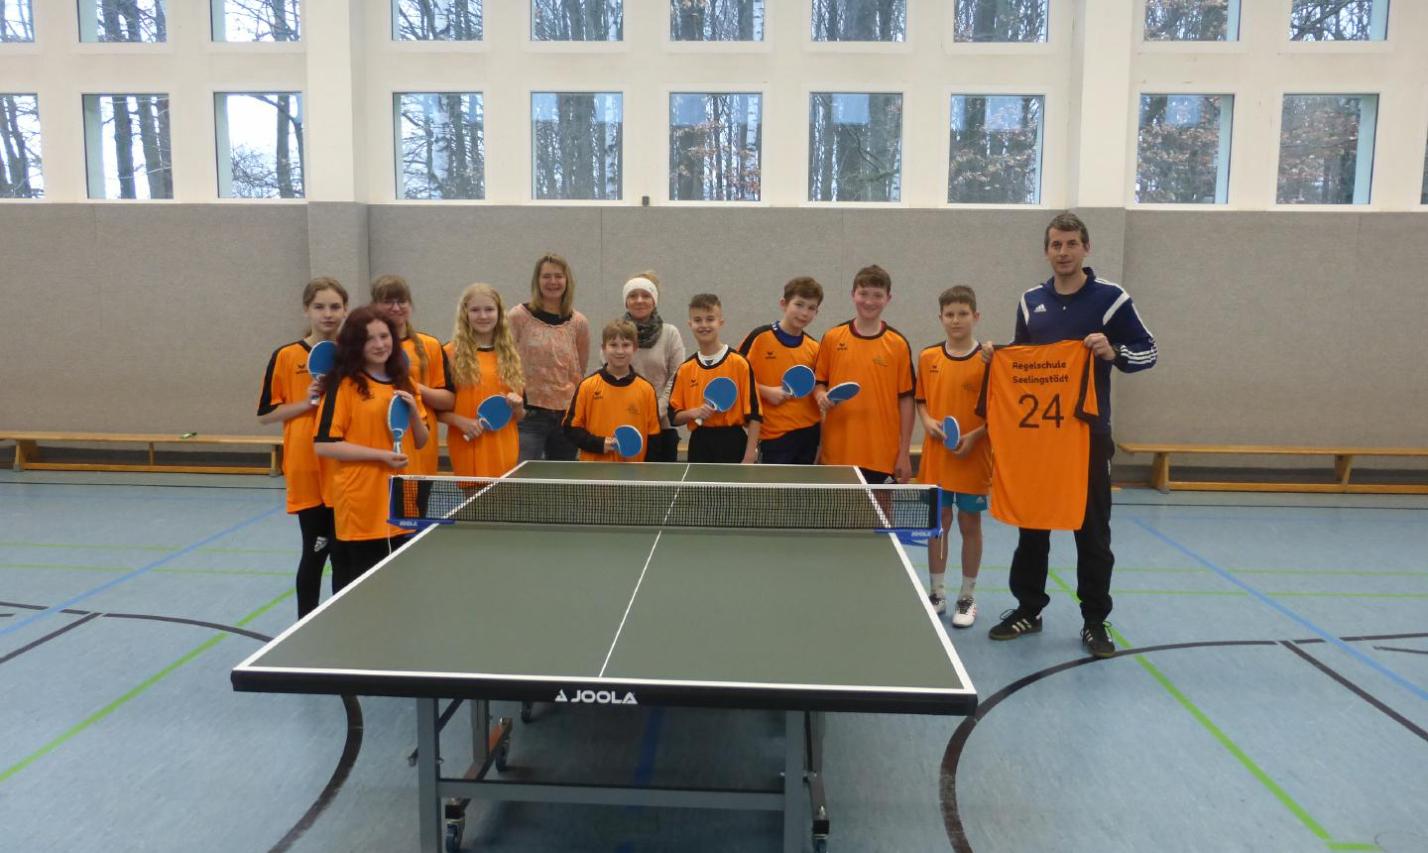 Die Schüler und Lehrer der Regelschule Seelingstädt freuen sich über eine neue Tischtennisplatte und einen Satz Trikots für die anstehenden Schulsportwettkämpfe.